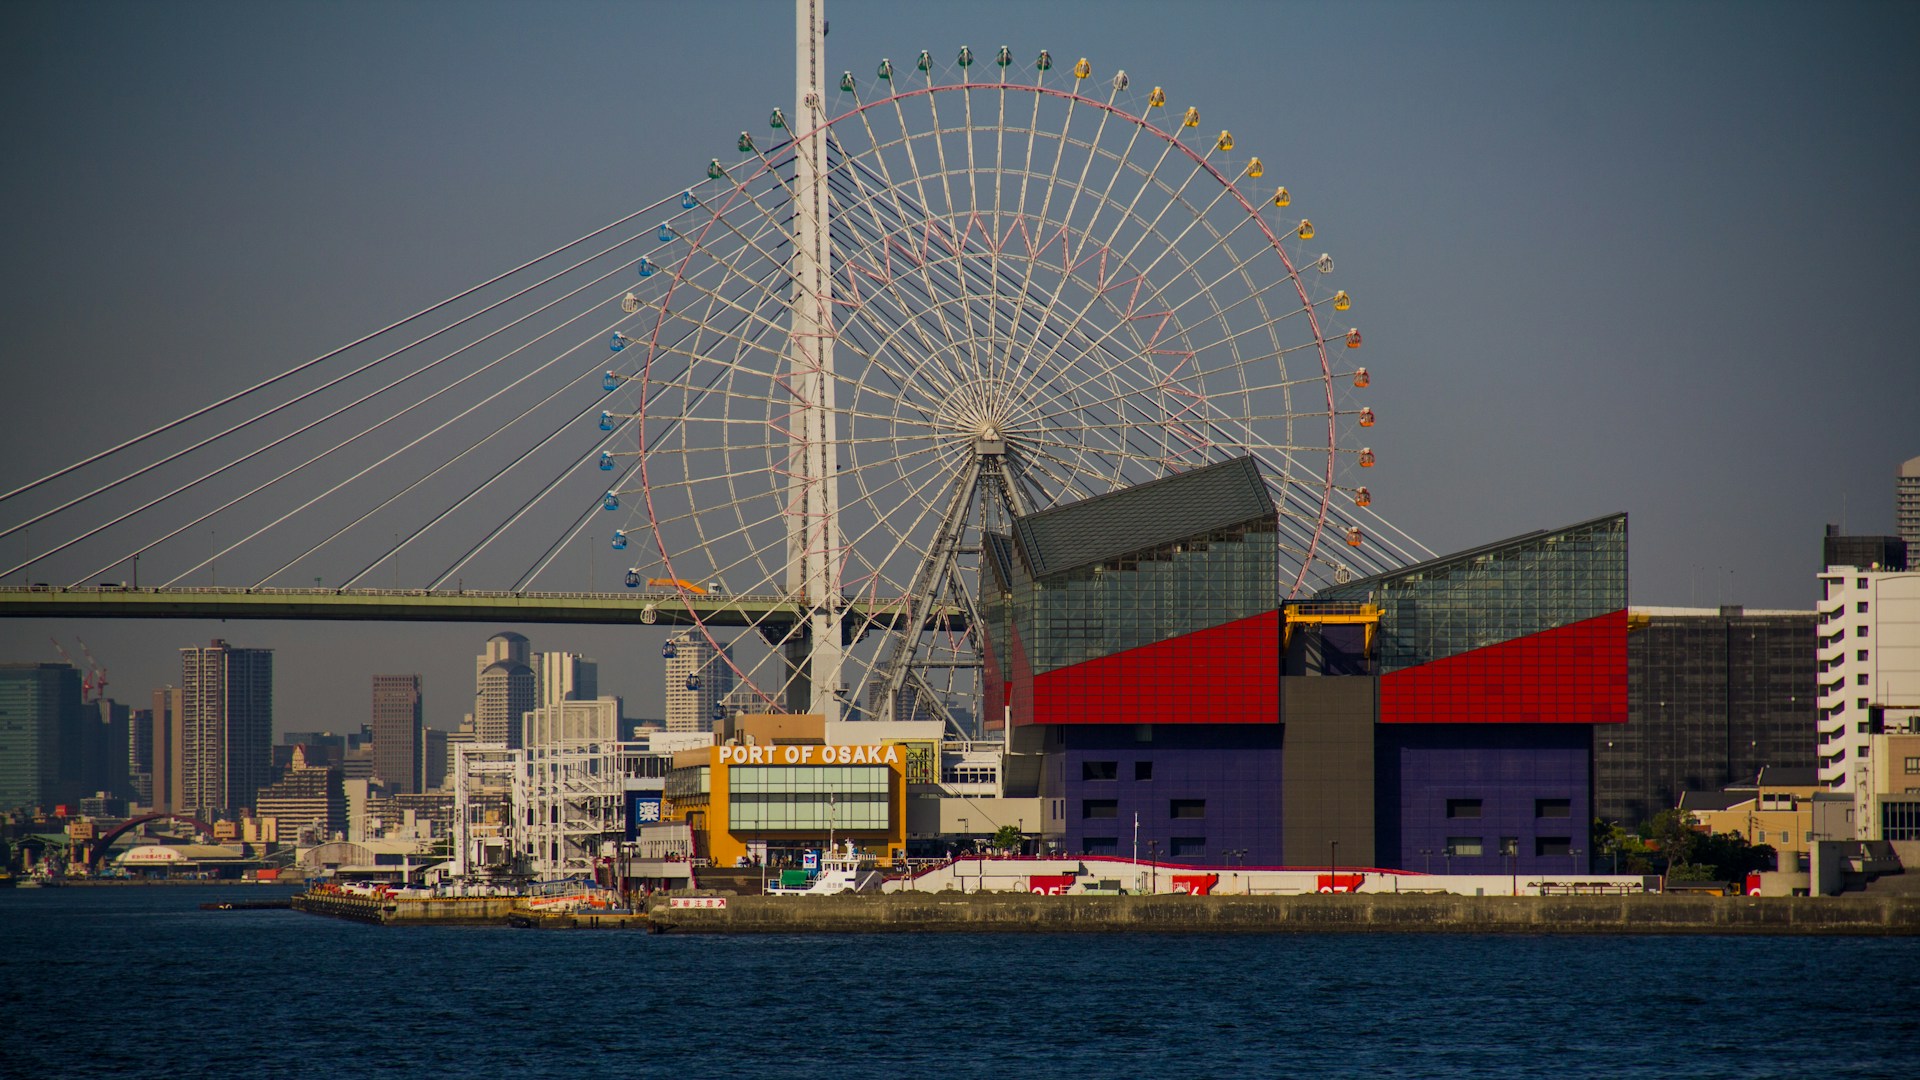 The Port of Osaka